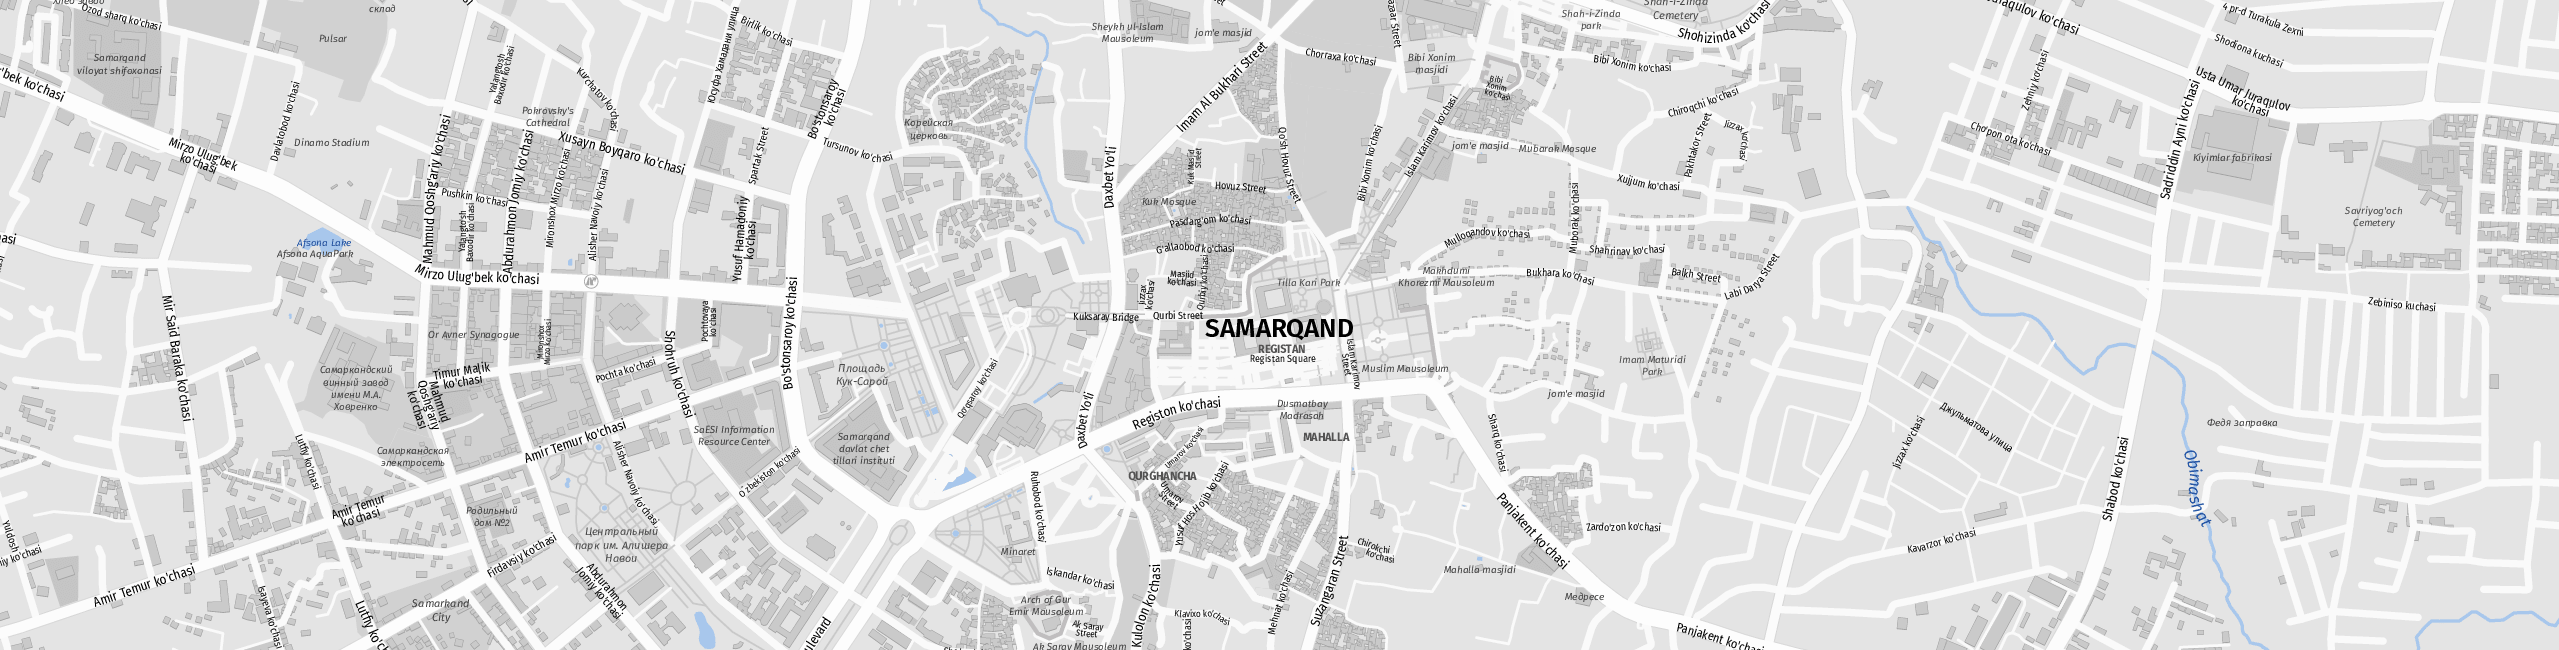 Stadtplan Samarkand zum Downloaden.